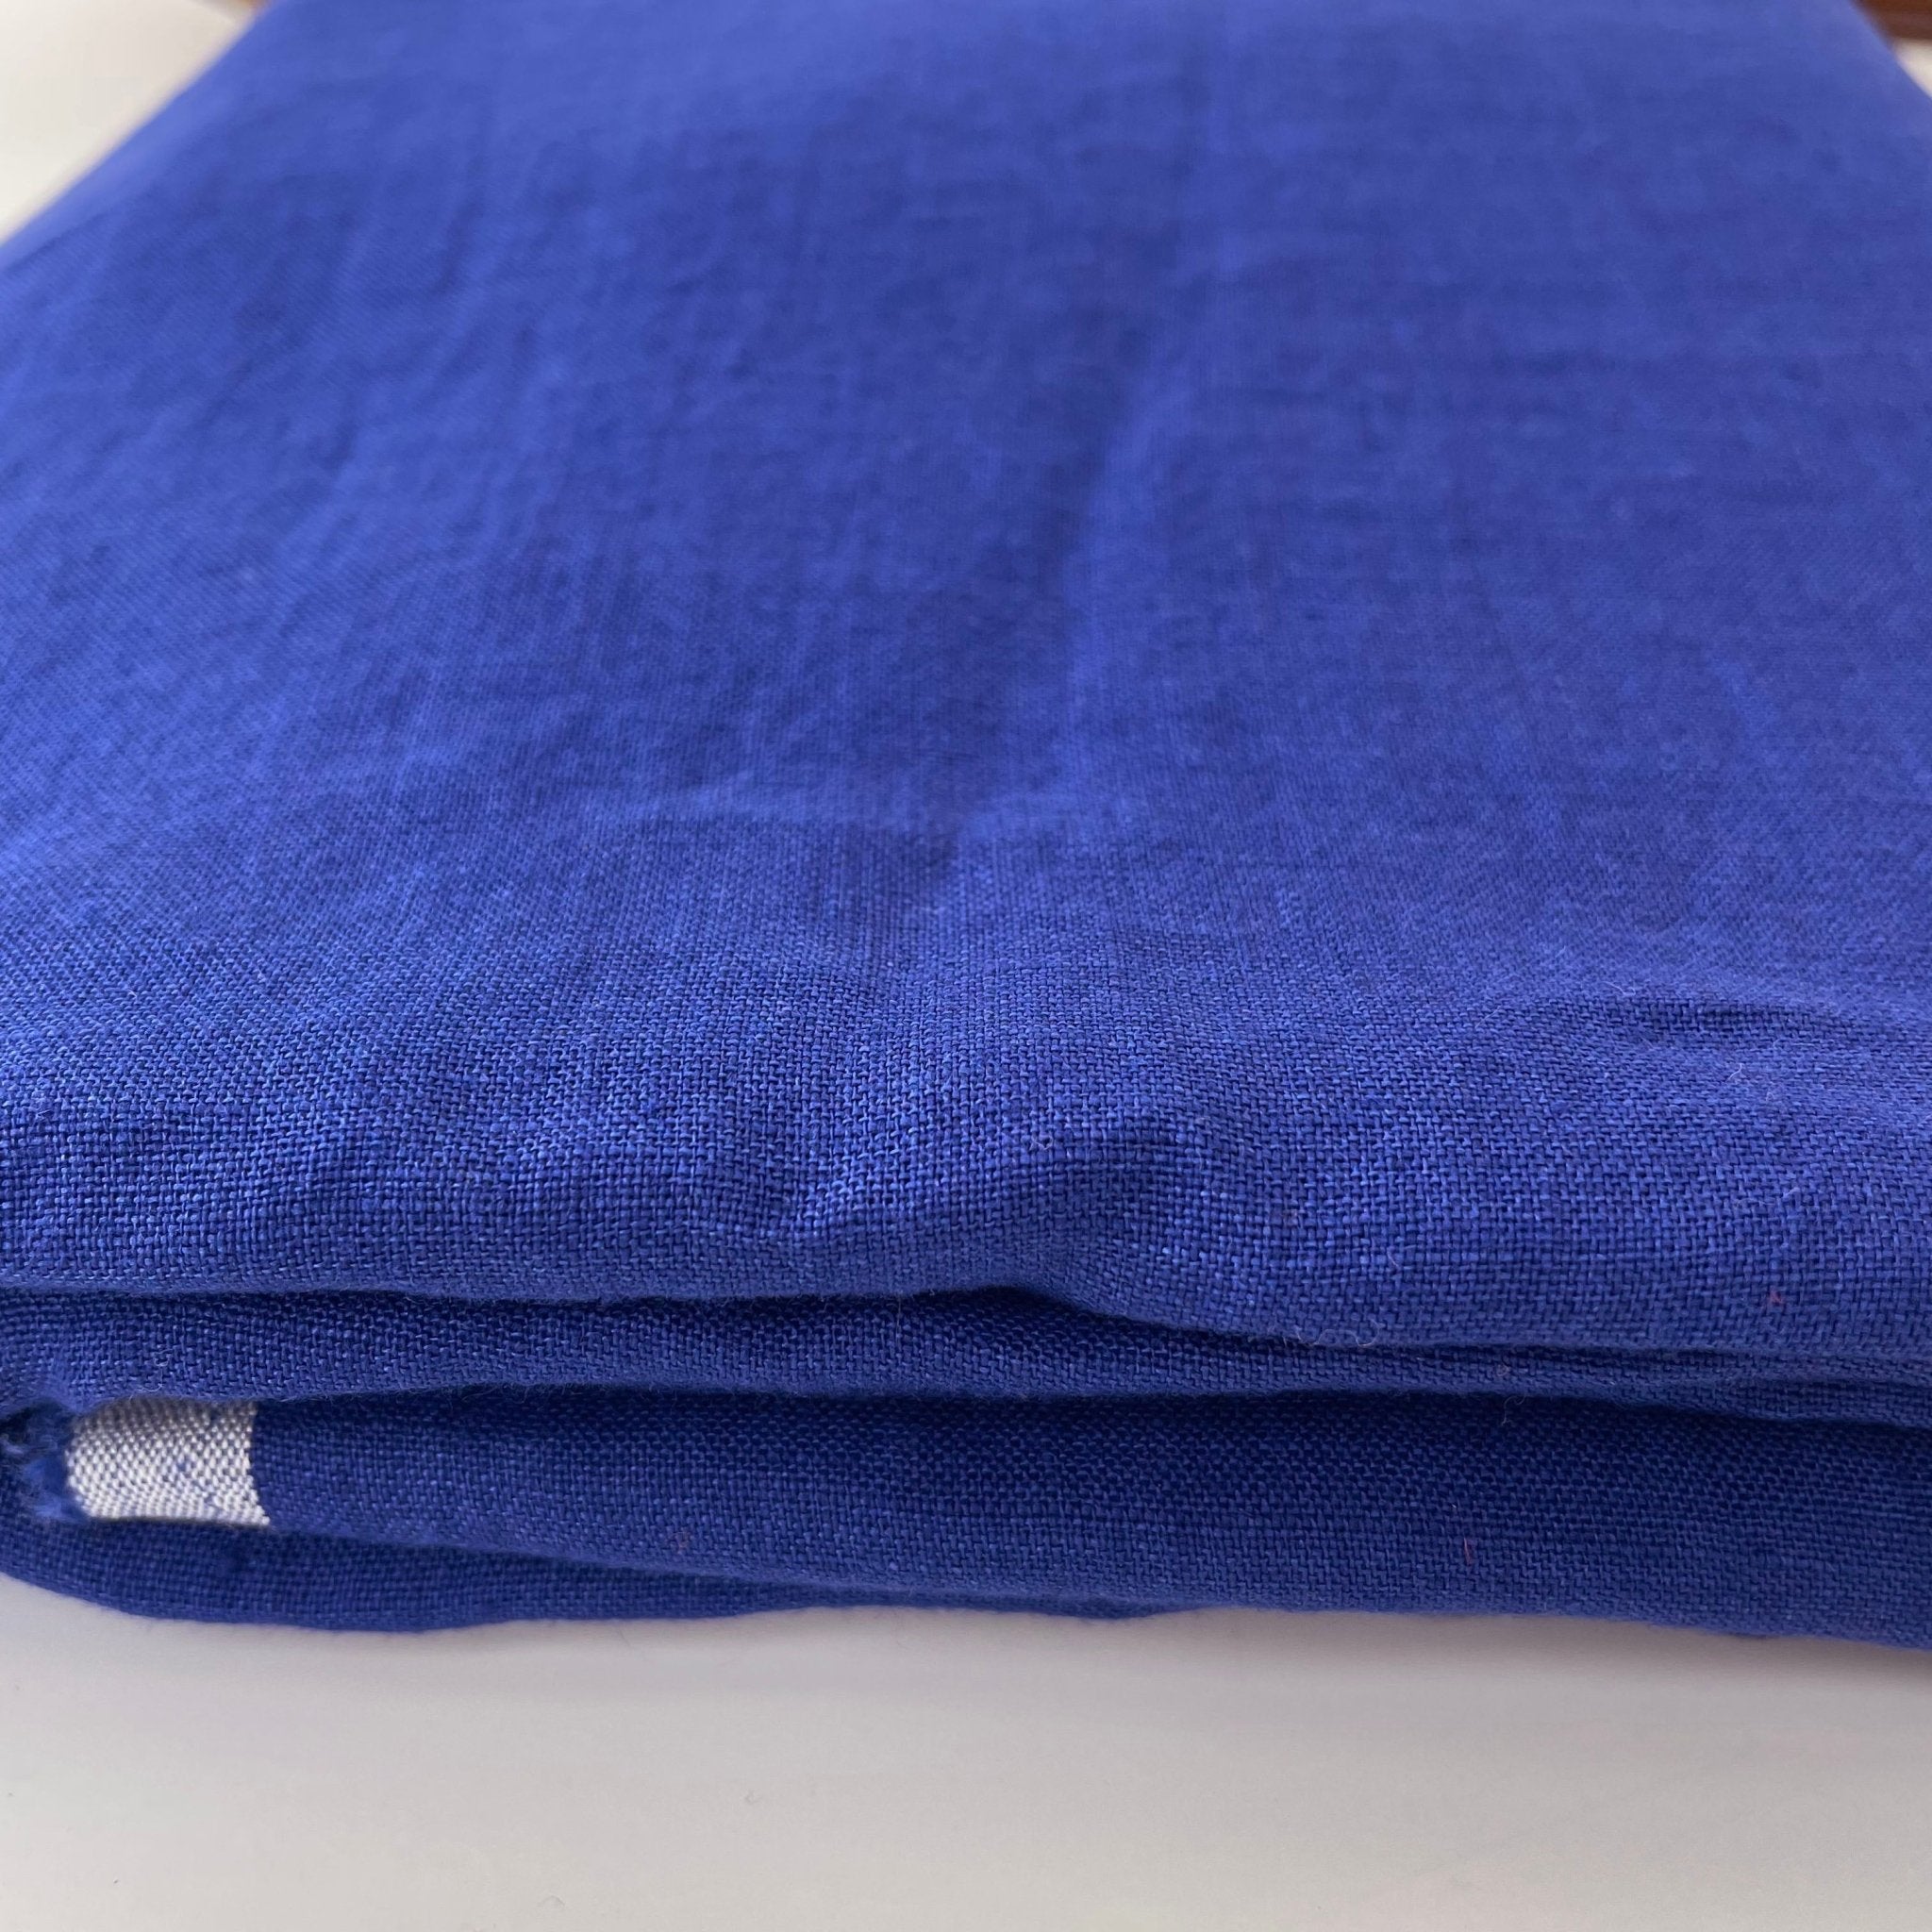 Linen Fabric Light Weight Soft Touch 21S 4892 6449 7252 6351 - The Linen Lab - Blue